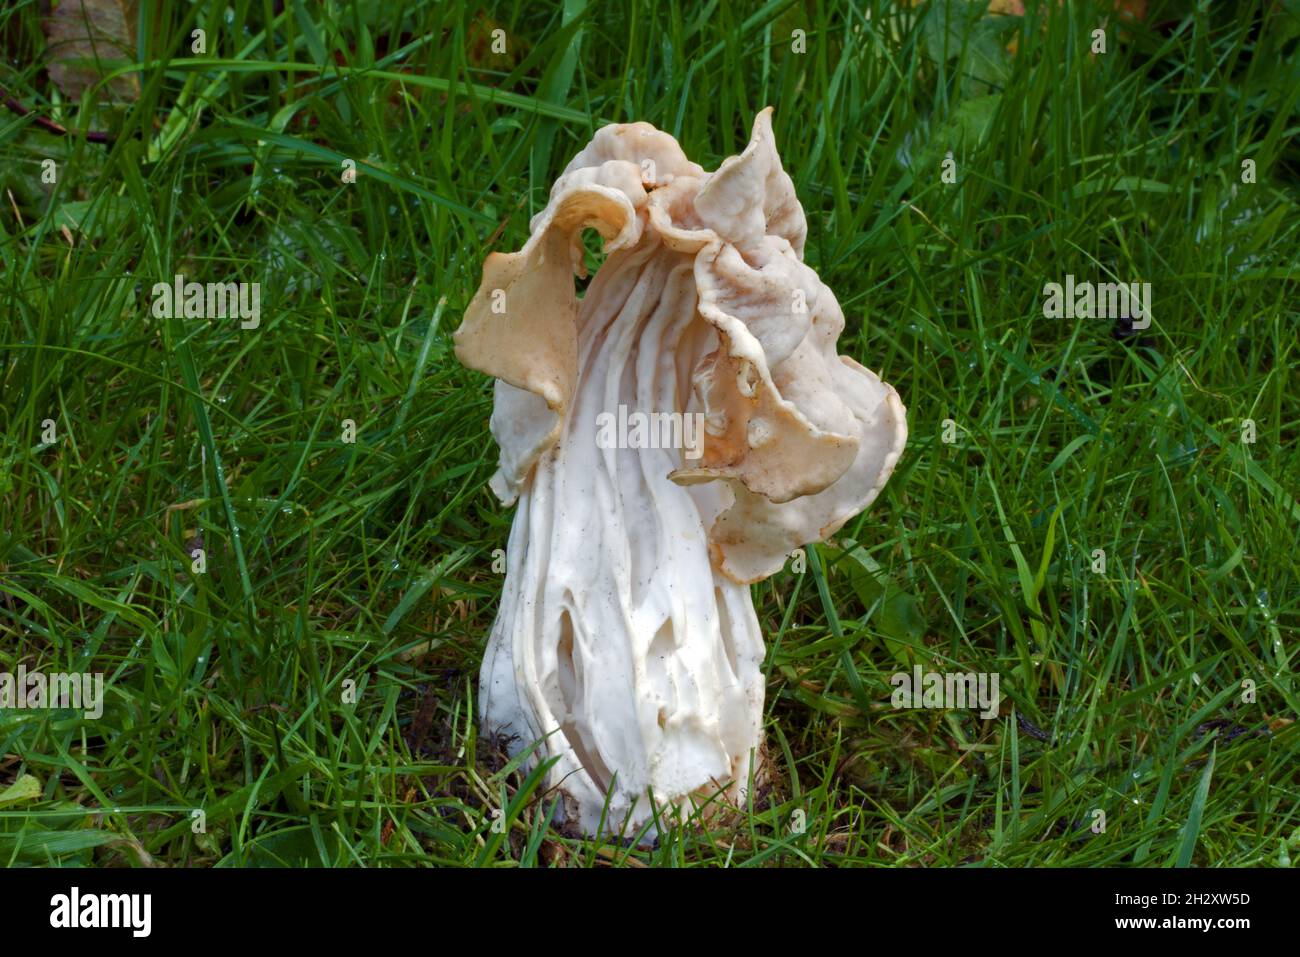 Helvella crisa (sella bianca) è un fungo ascomycete che cresce nelle praterie così come nelle foreste umide di latifoglie. Foto Stock